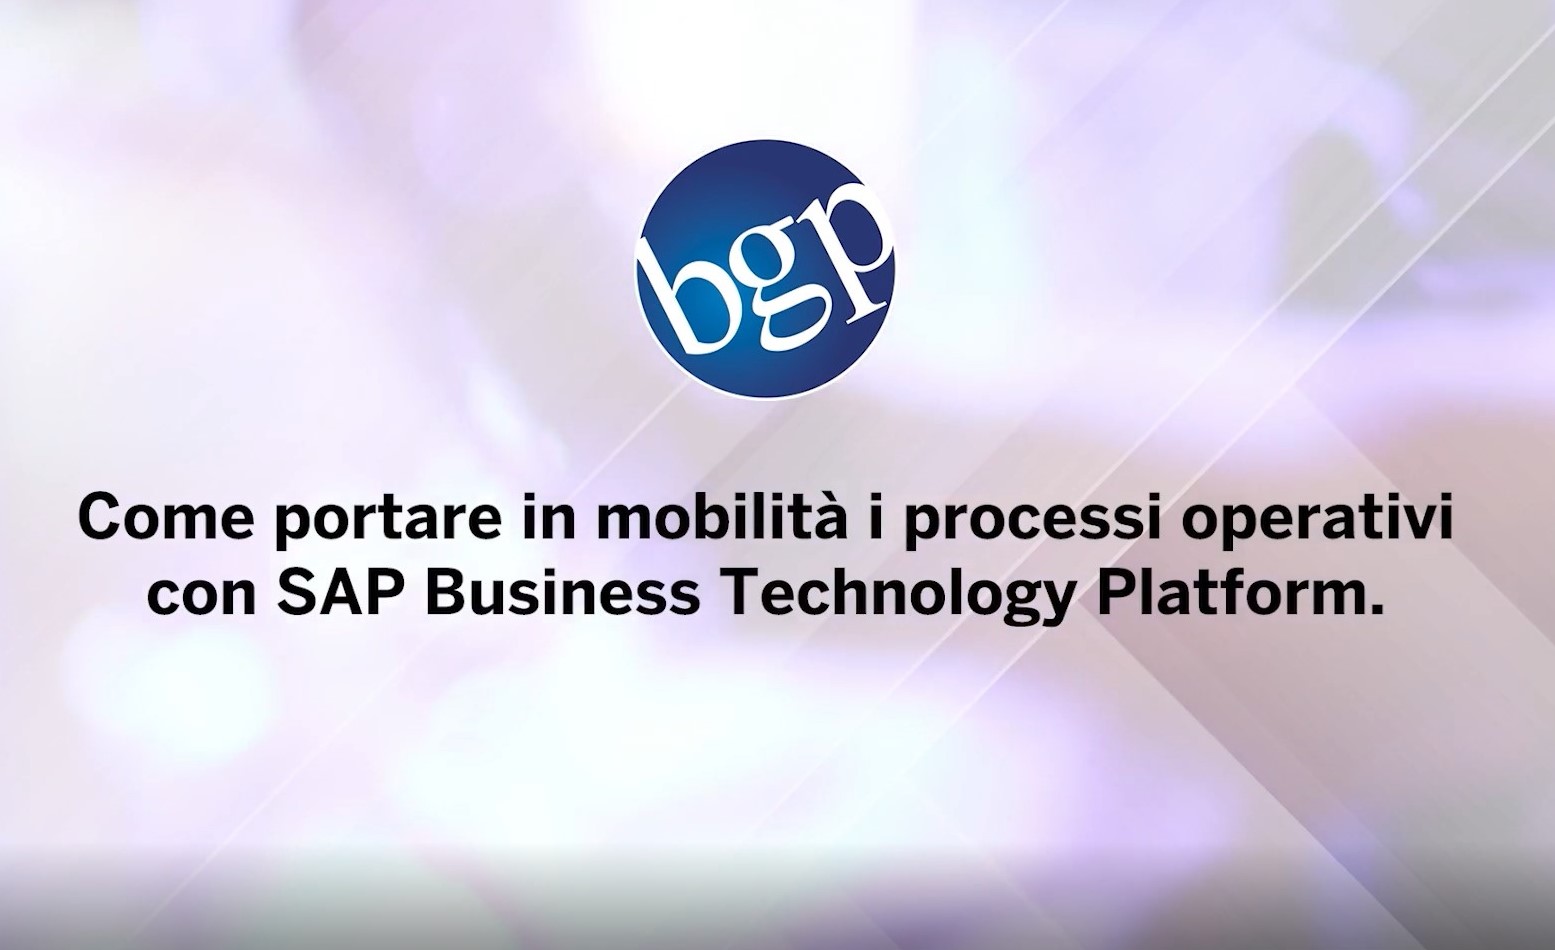 SAP NOW 2021 Portare in mobilità Gestione del Magazzino e Manutenzione Impianti con SAP BTP in EP Produzione